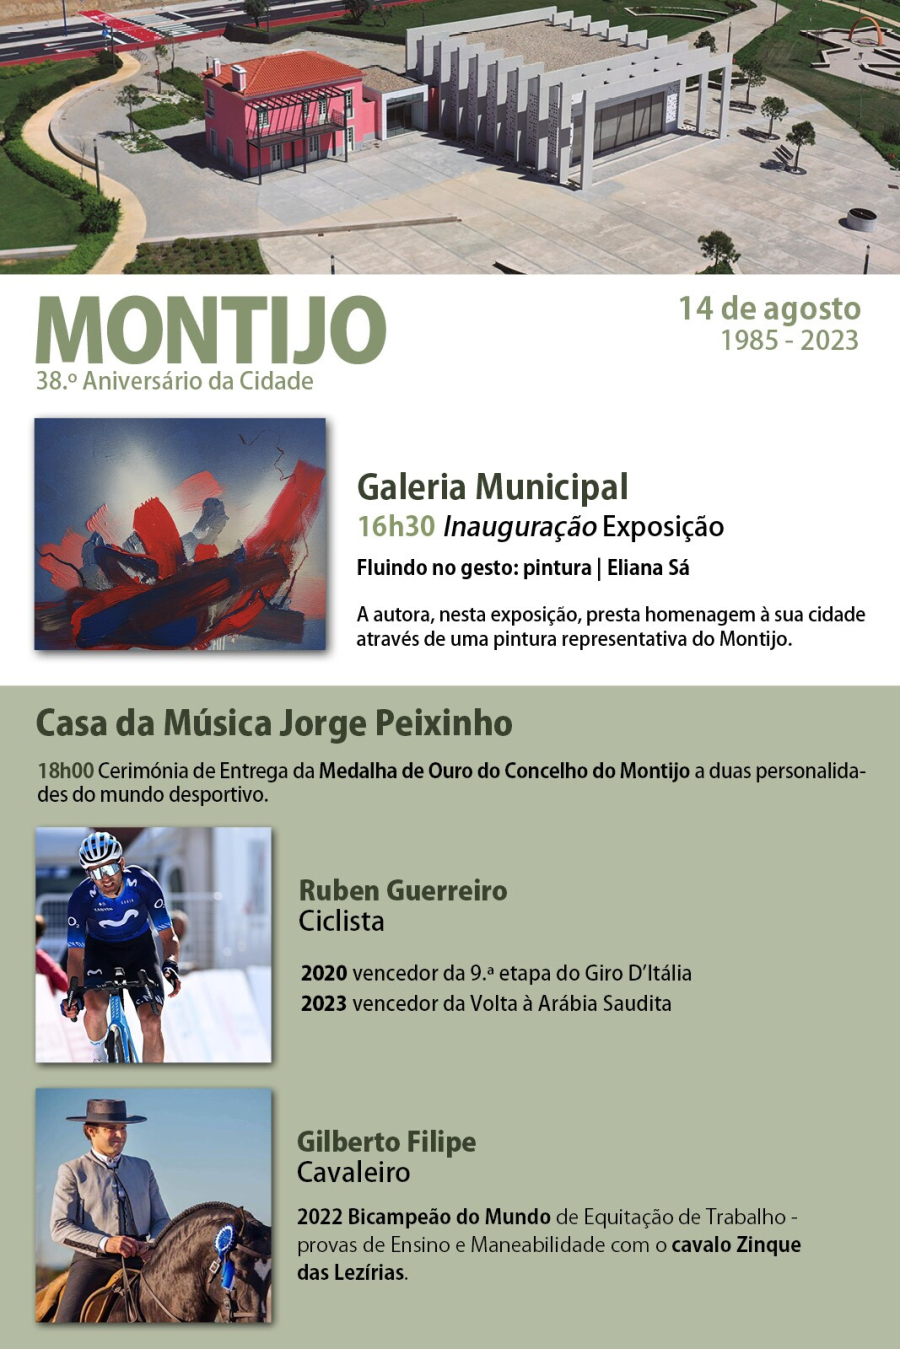 Comemorações do 38.º Aniversário da Cidade do Montijo